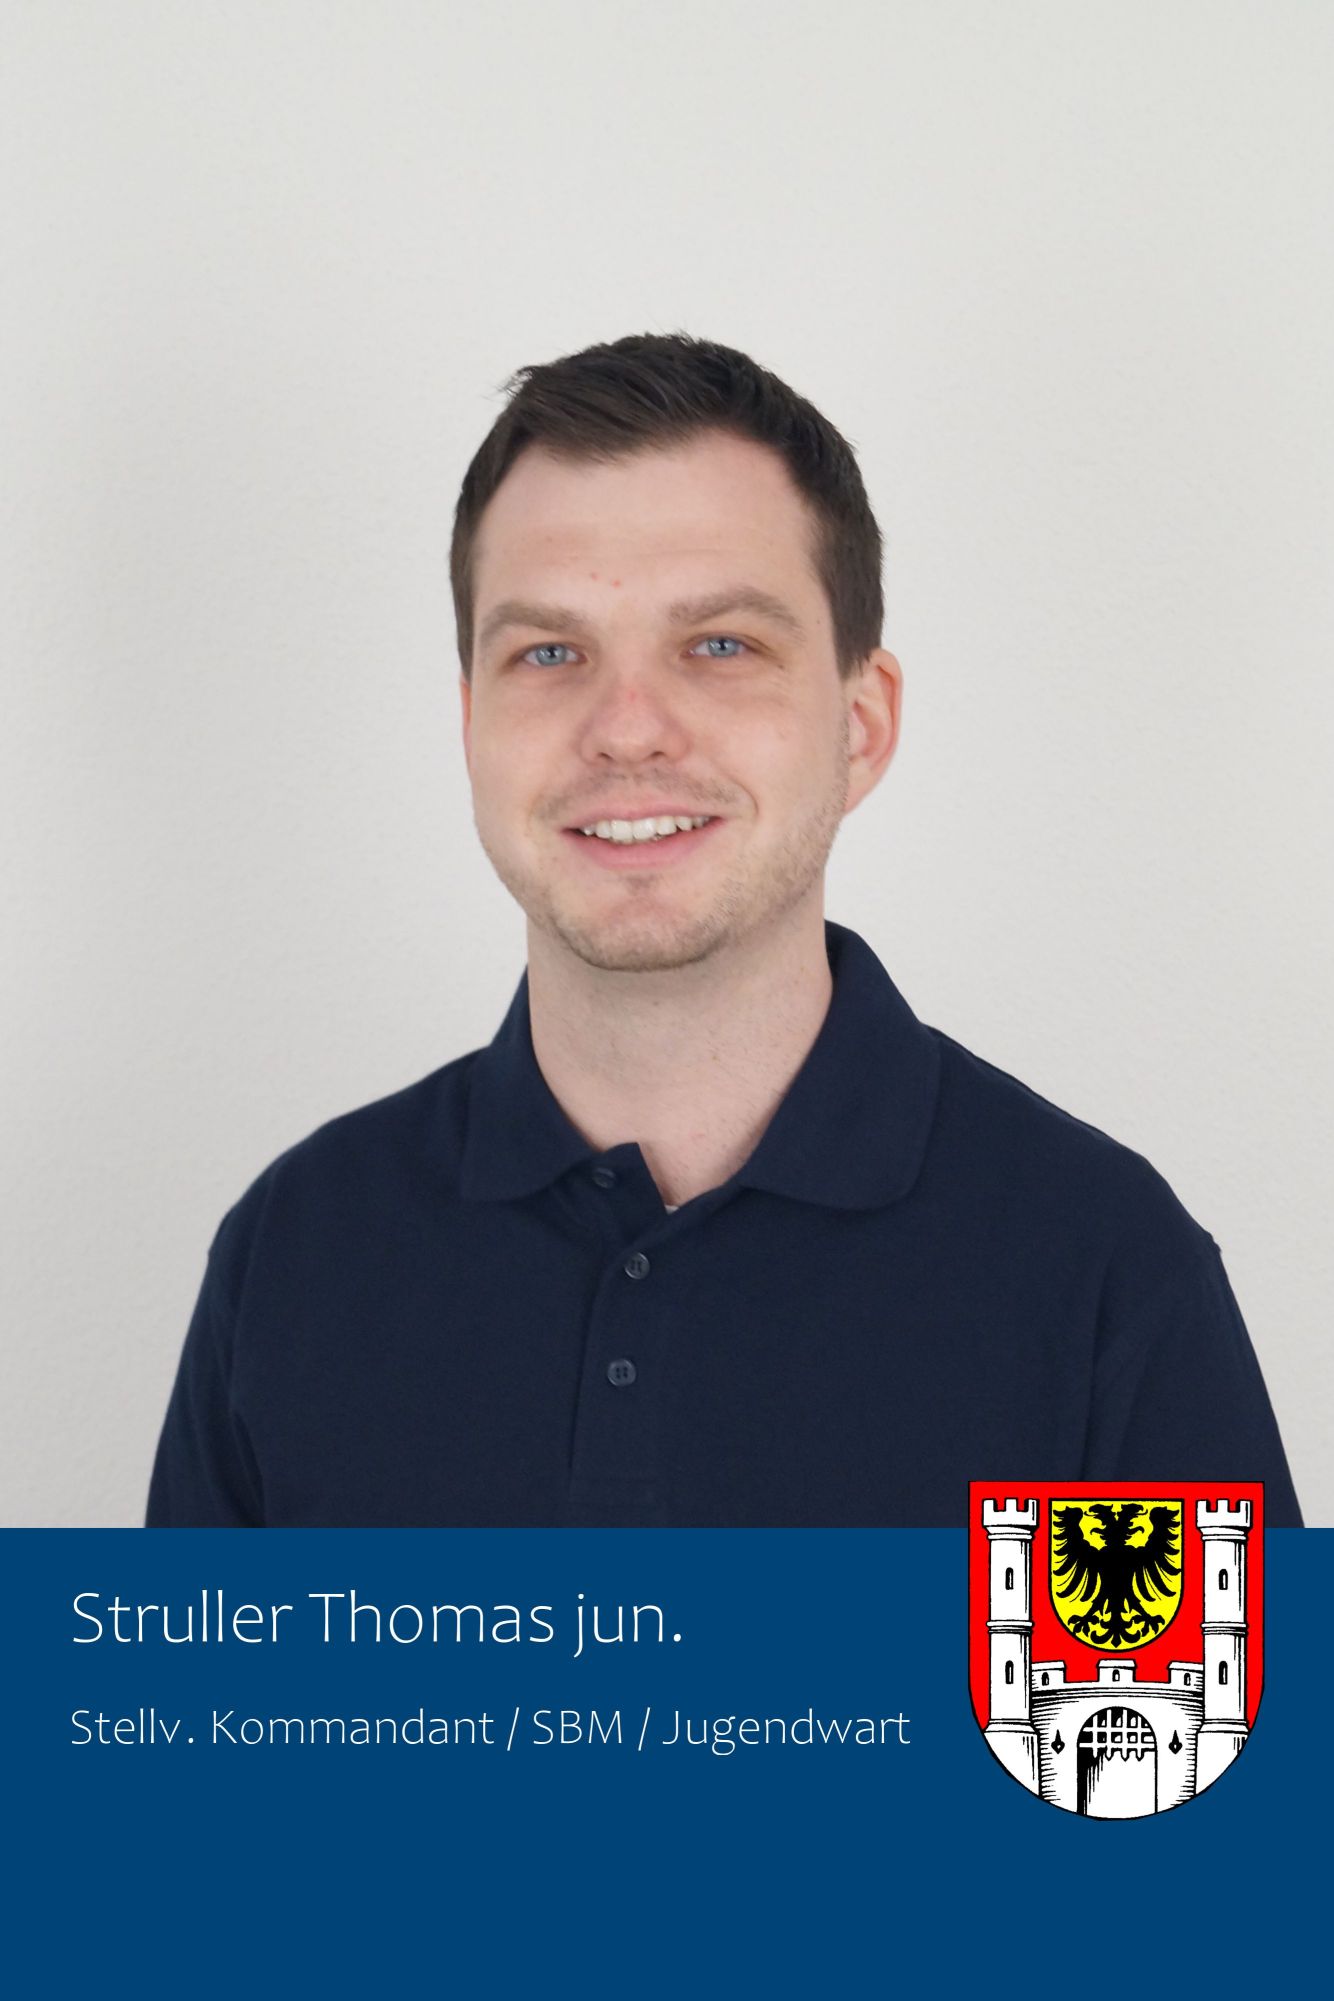 Thomas Struller jun.